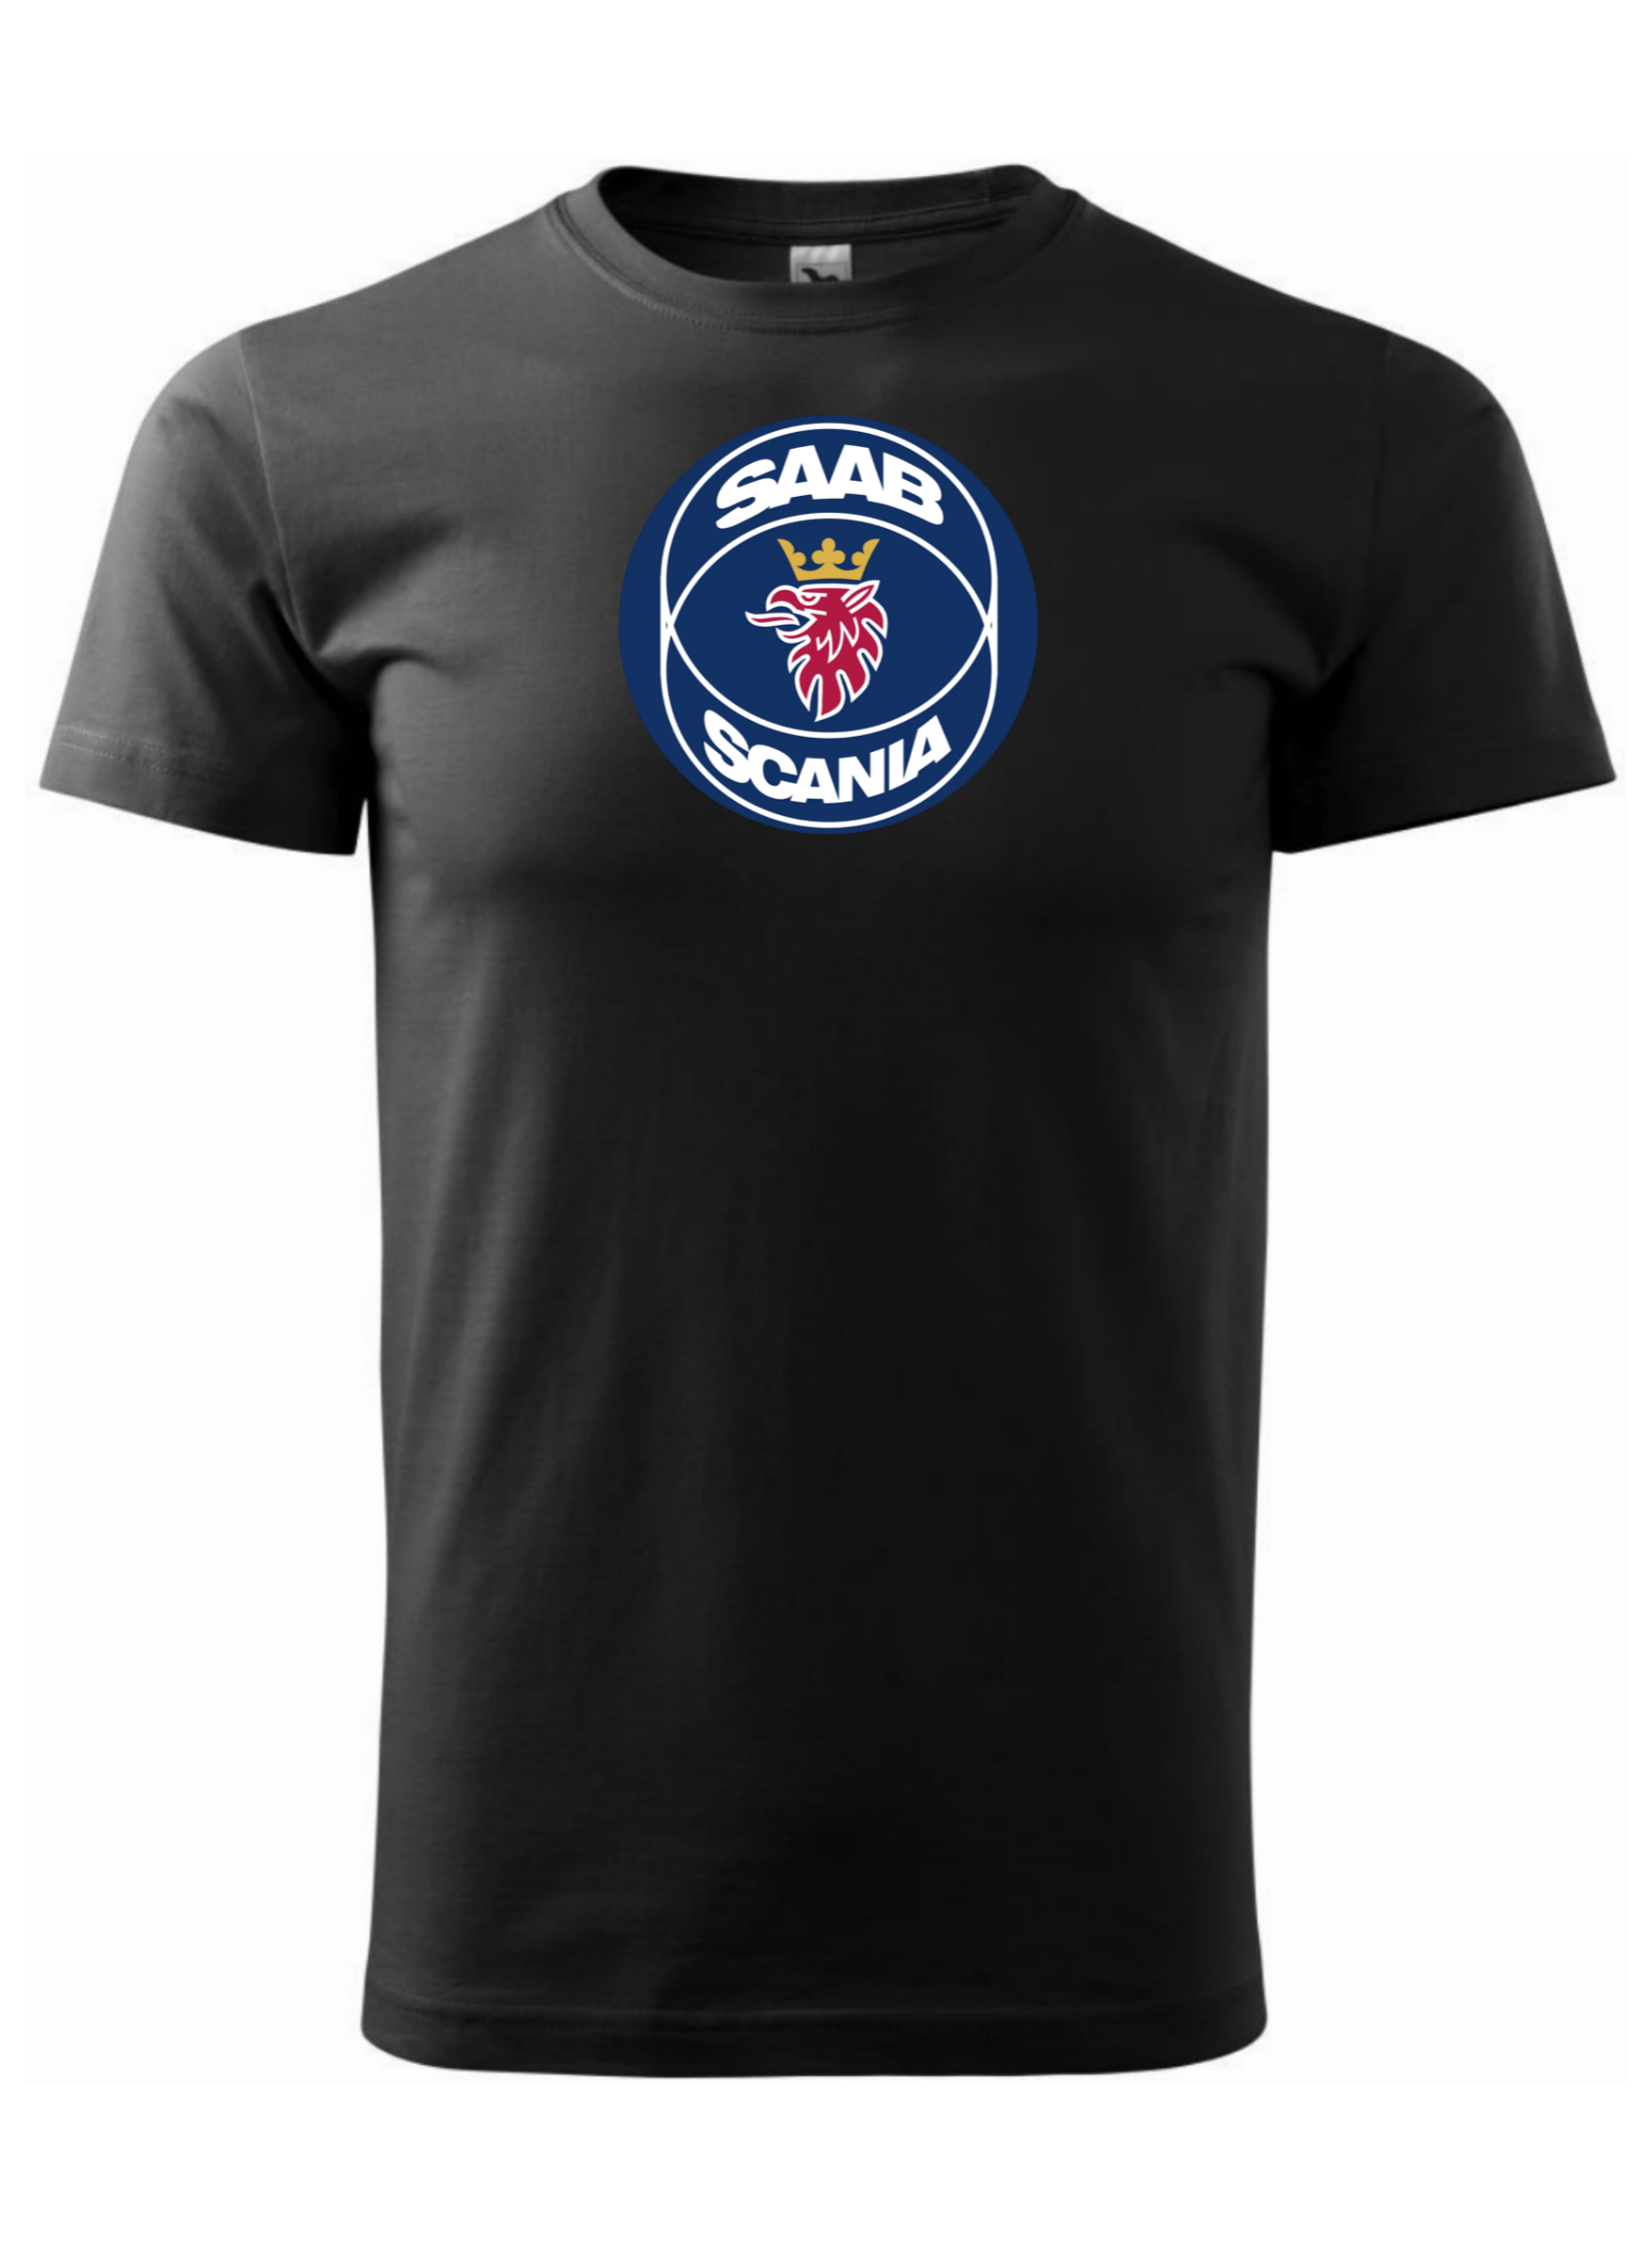 Pánské tričko s potiskem značky Scania- Saab